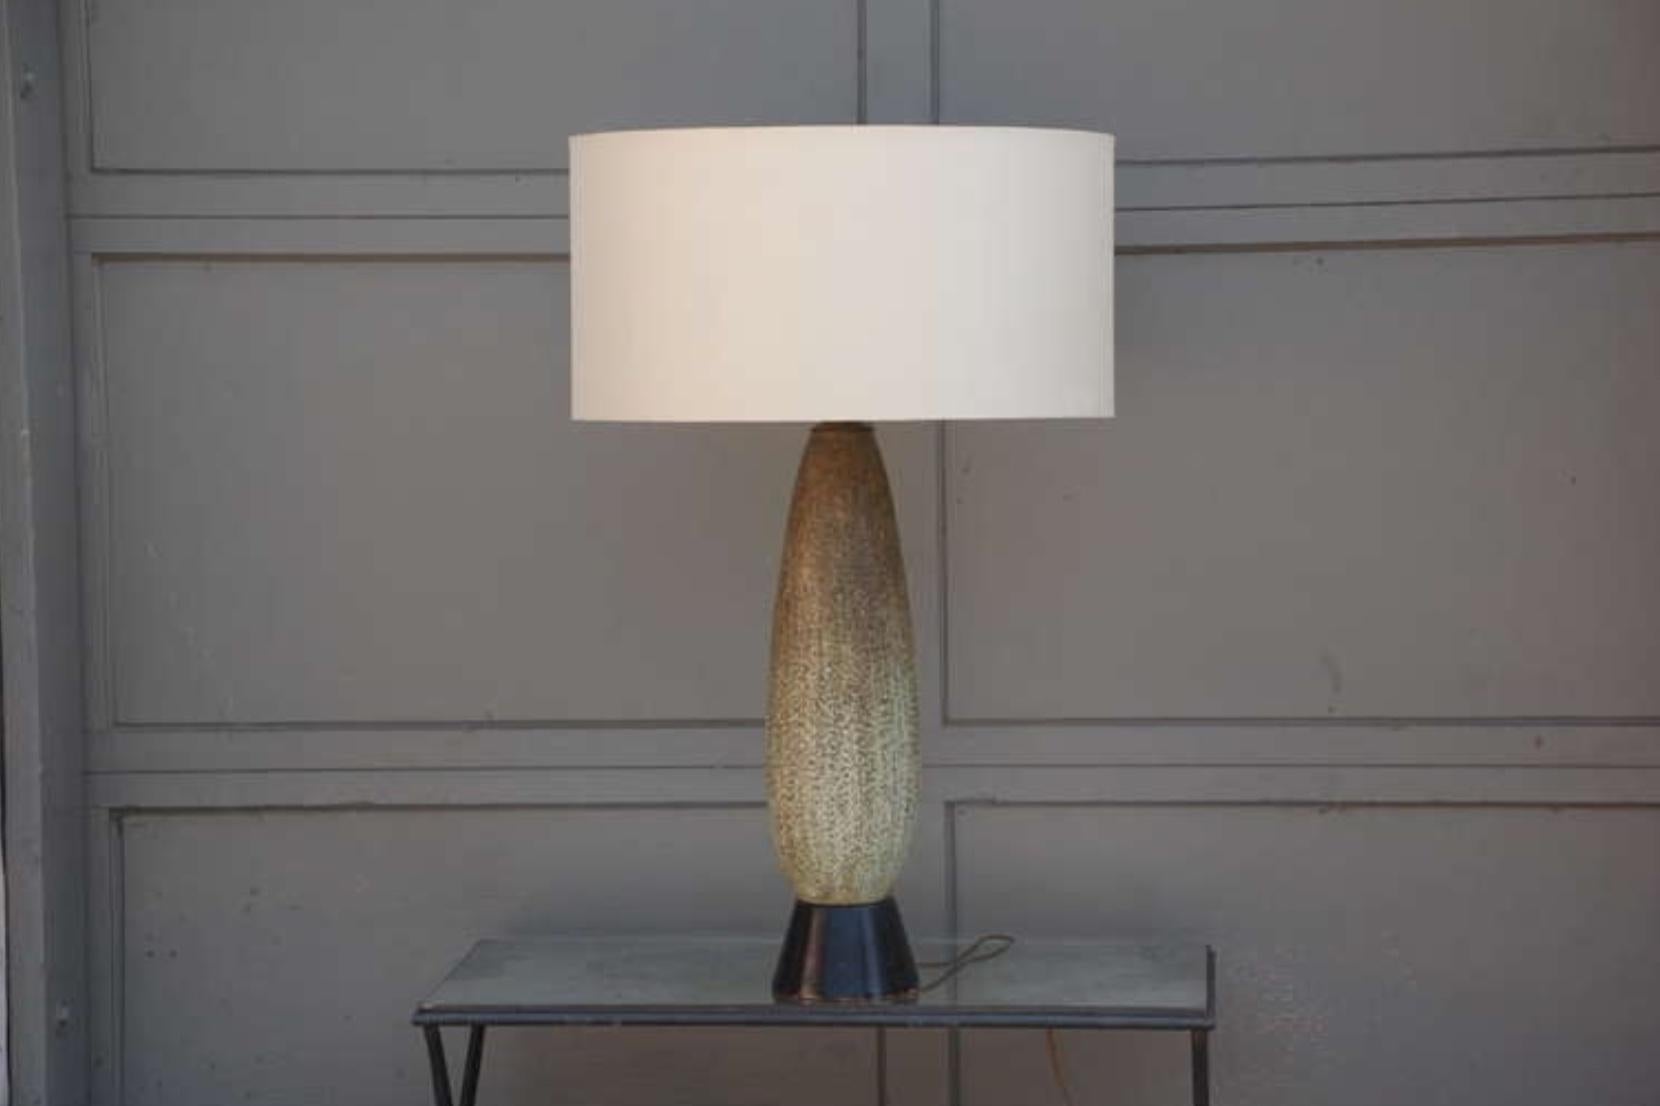 Lampe oblongue chic et lourde en céramique de Studio. Recâblé.

Dimensions de l'abat-jour : 11 pouces de hauteur x 22 pouces de diamètre.